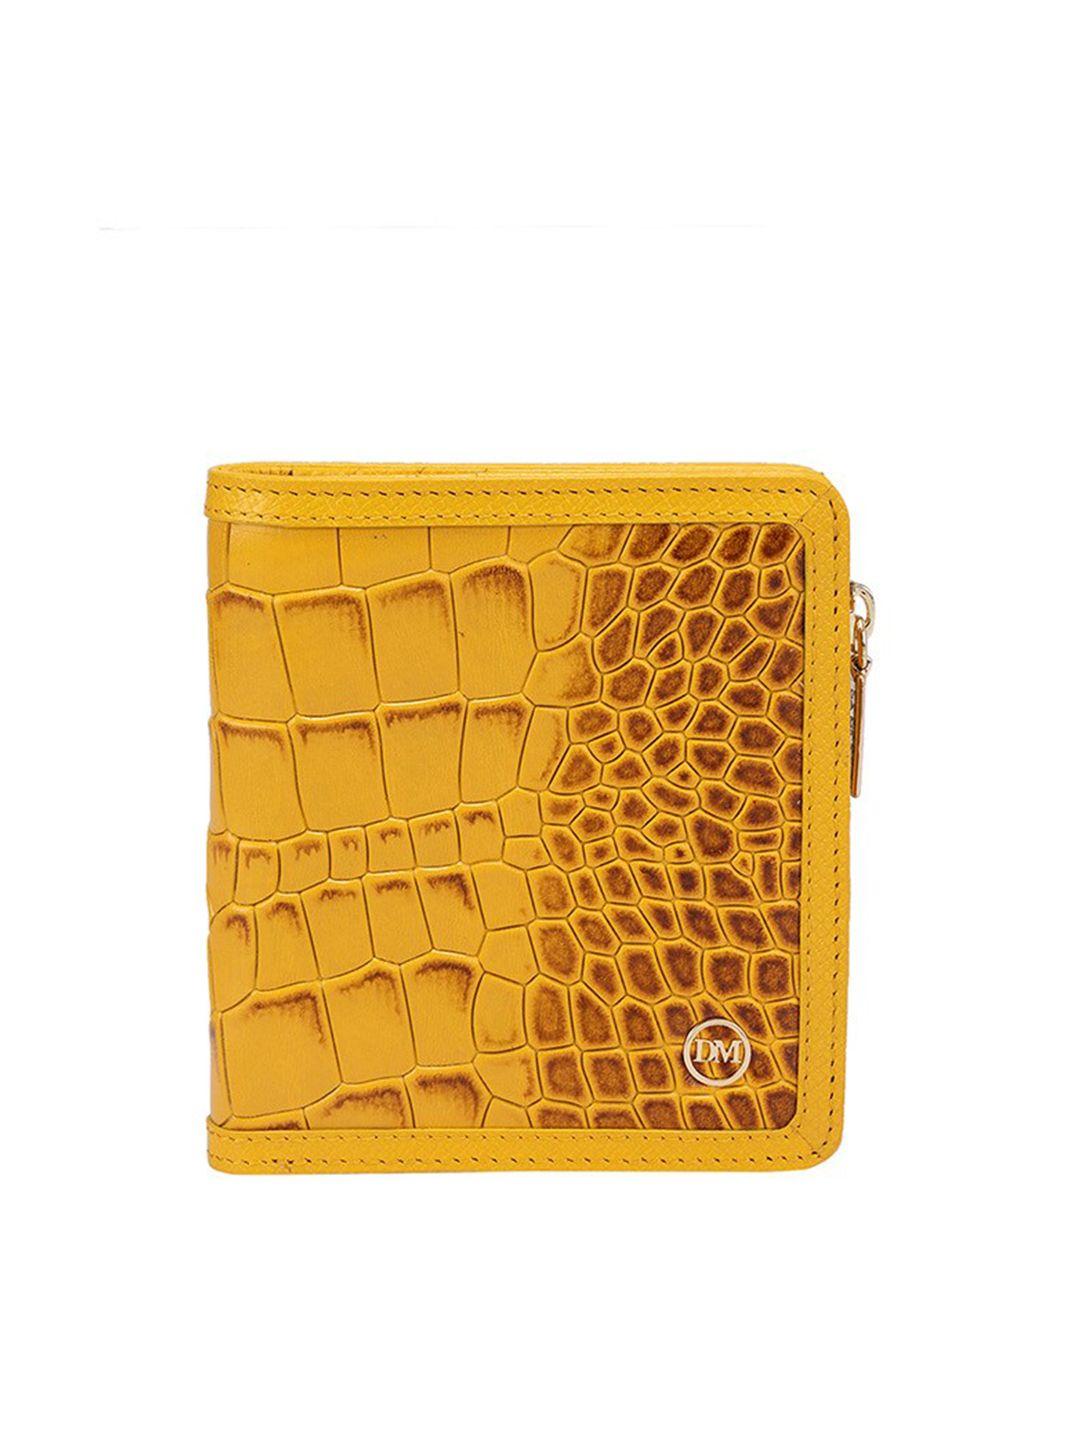 da milano women yellow & orange textured leather two fold wallet